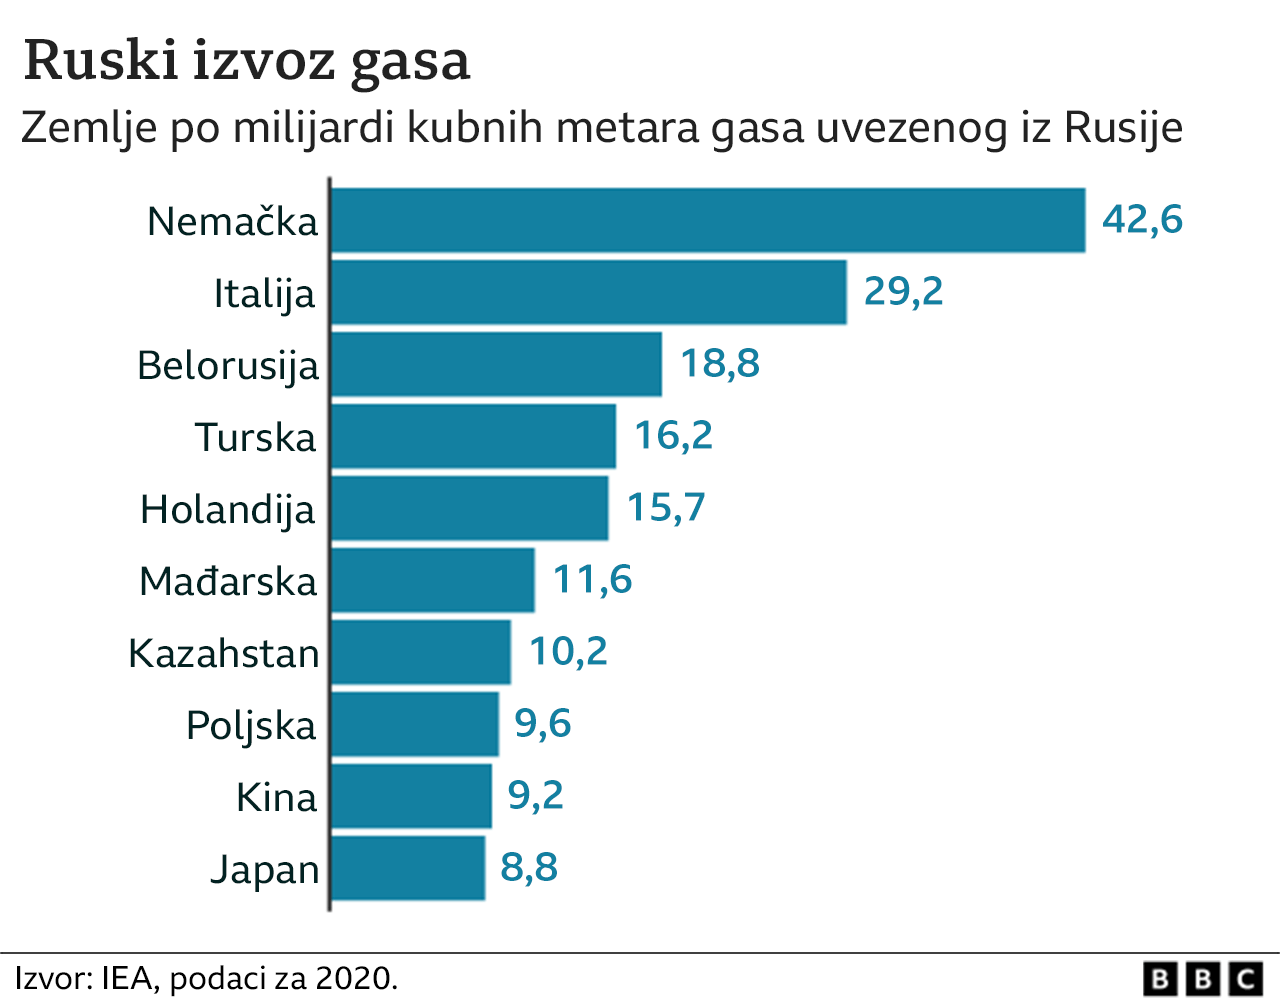 gasovodi, izvoz gasa iz Rusije